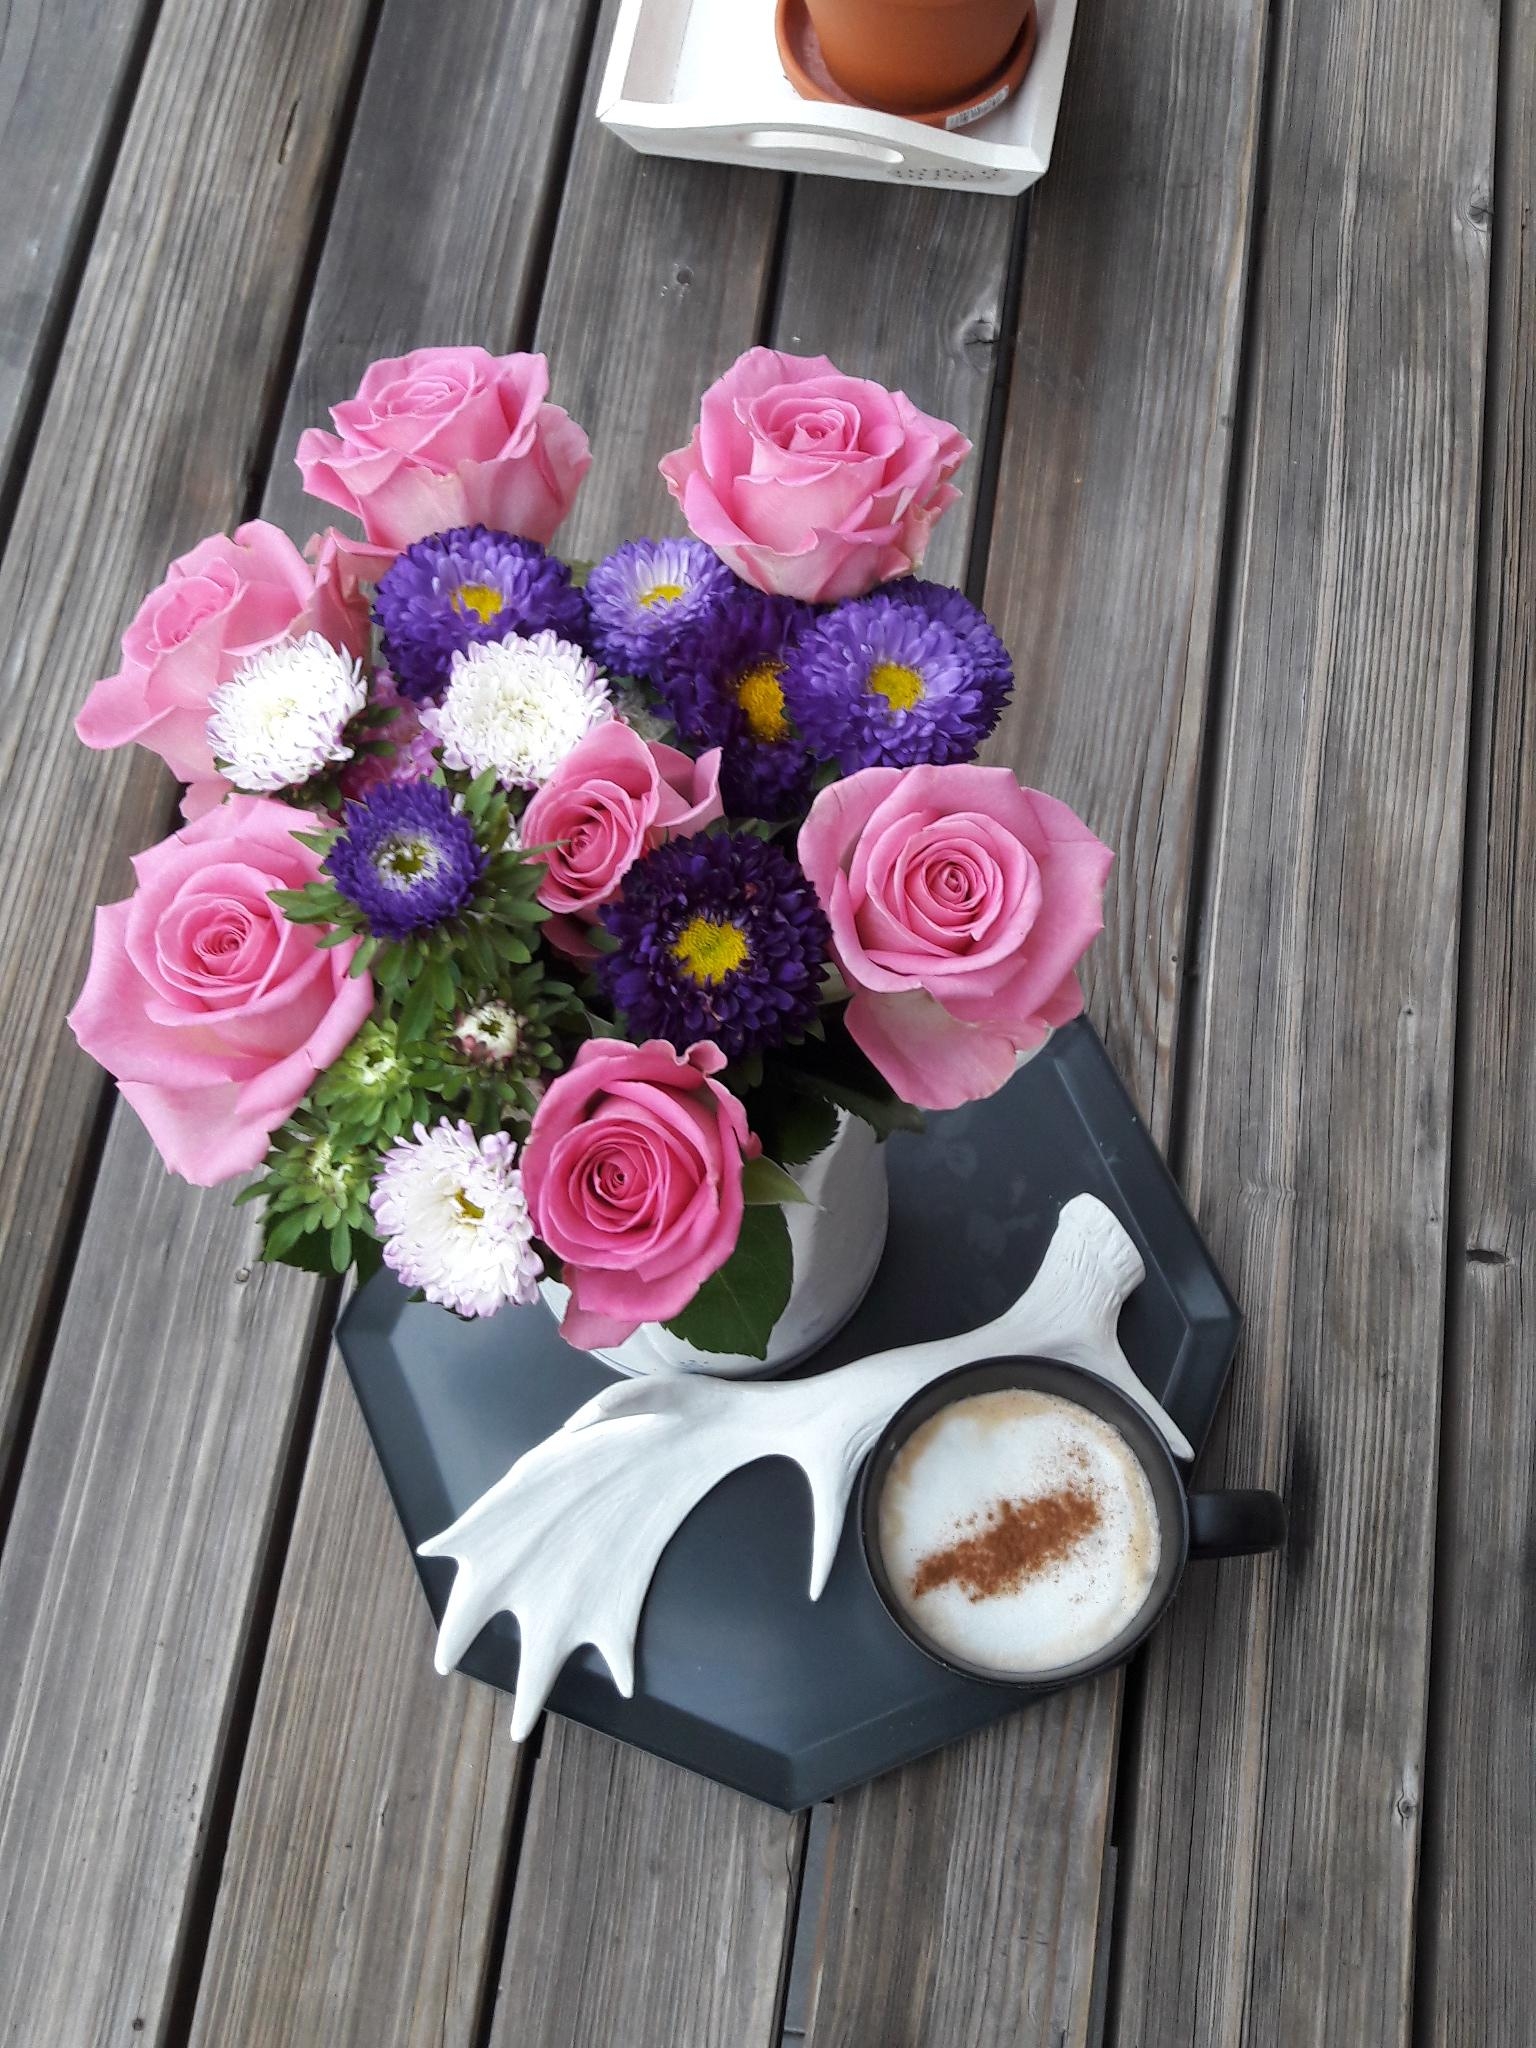 Kaffeepause 
#blumen #flowers #holz #aufdemtisch #blumenstrauß #deko 